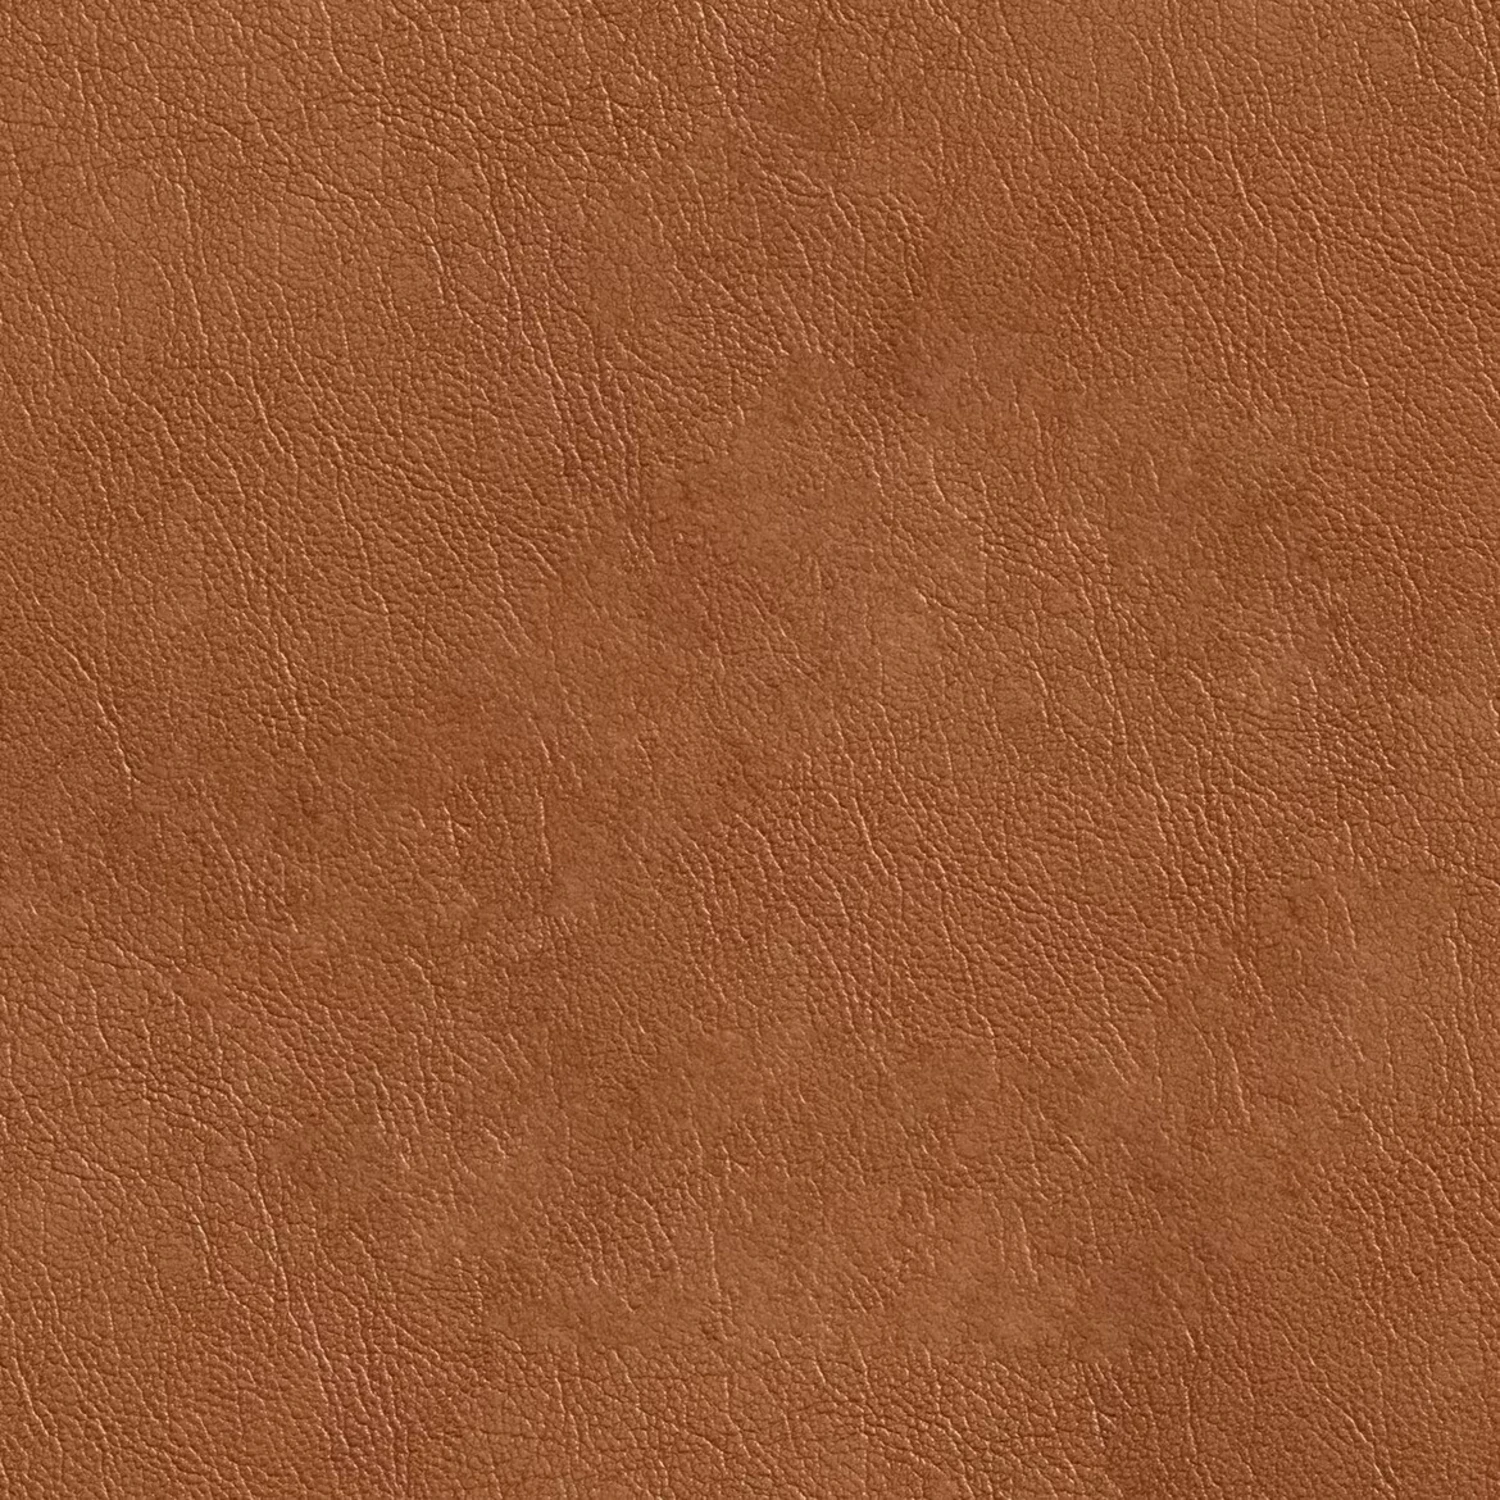 3208 10款高清皮革材质高清背景贴图素材 10 Leather Texture Background